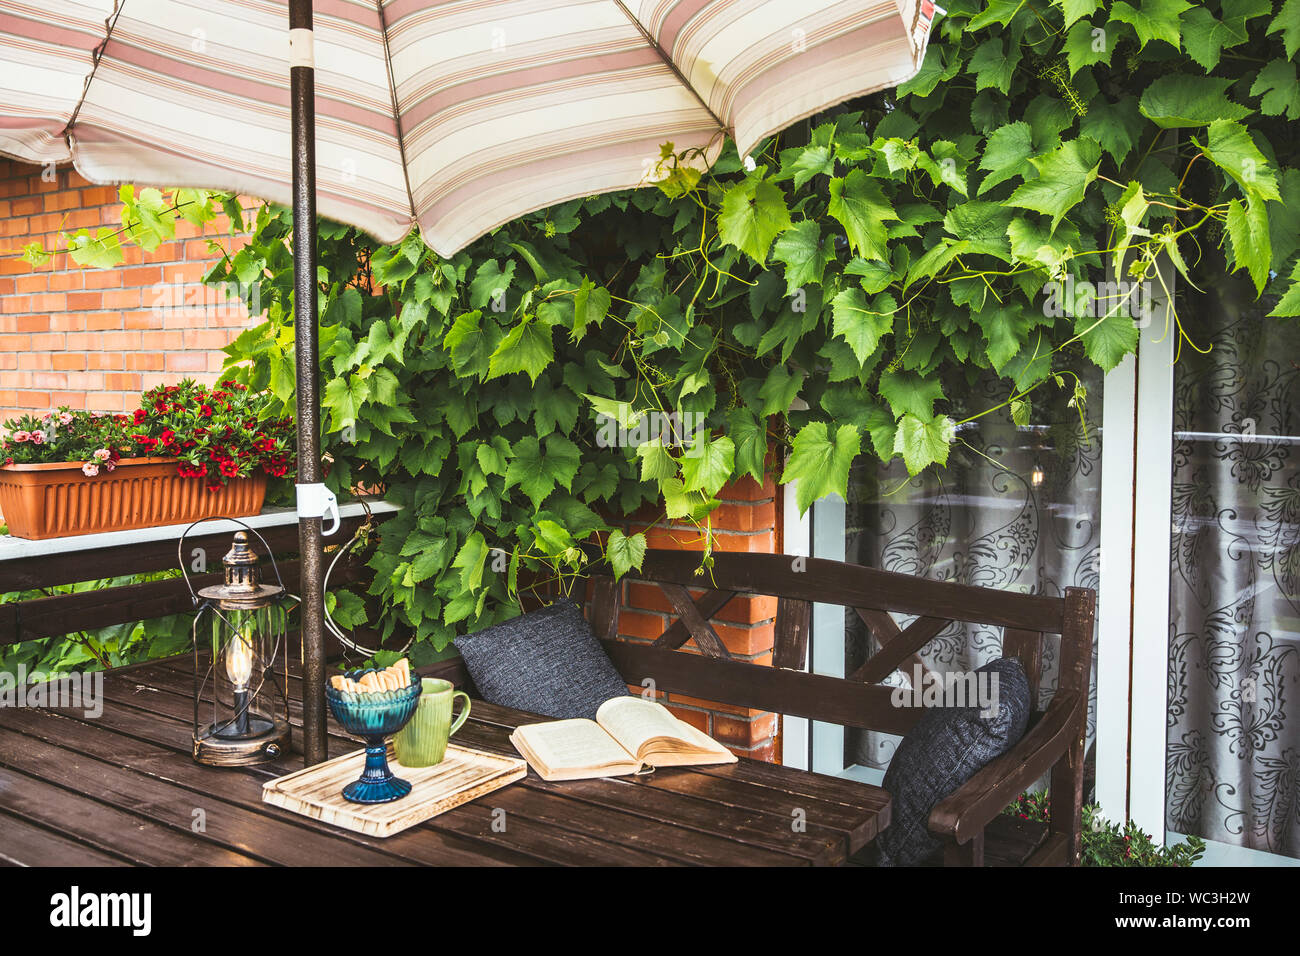 Carino casa privata balcone con lussureggianti vigneti come decorazione e aperti sun ombrellone per ombra nella soleggiata giornata estiva meteo. Libro aperto, moderno Foto Stock